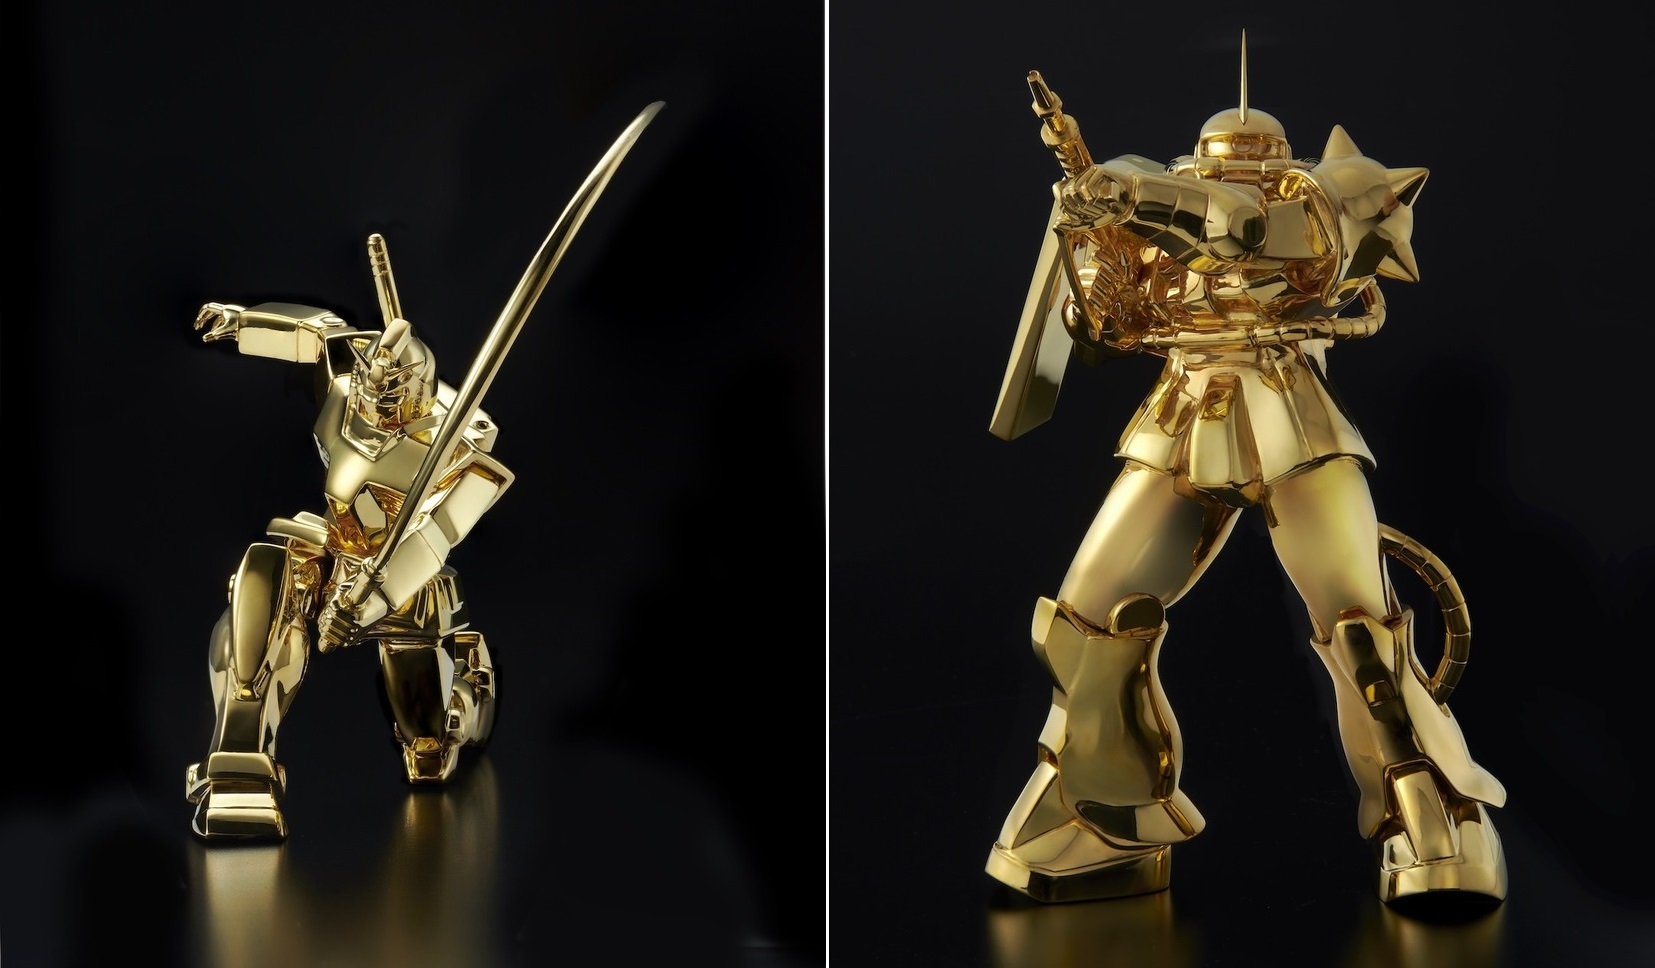 Chiêm ngưỡng những mẫu Gundam bằng vàng khối với giá “rẻ nhất” hơn 800 triệu đồng